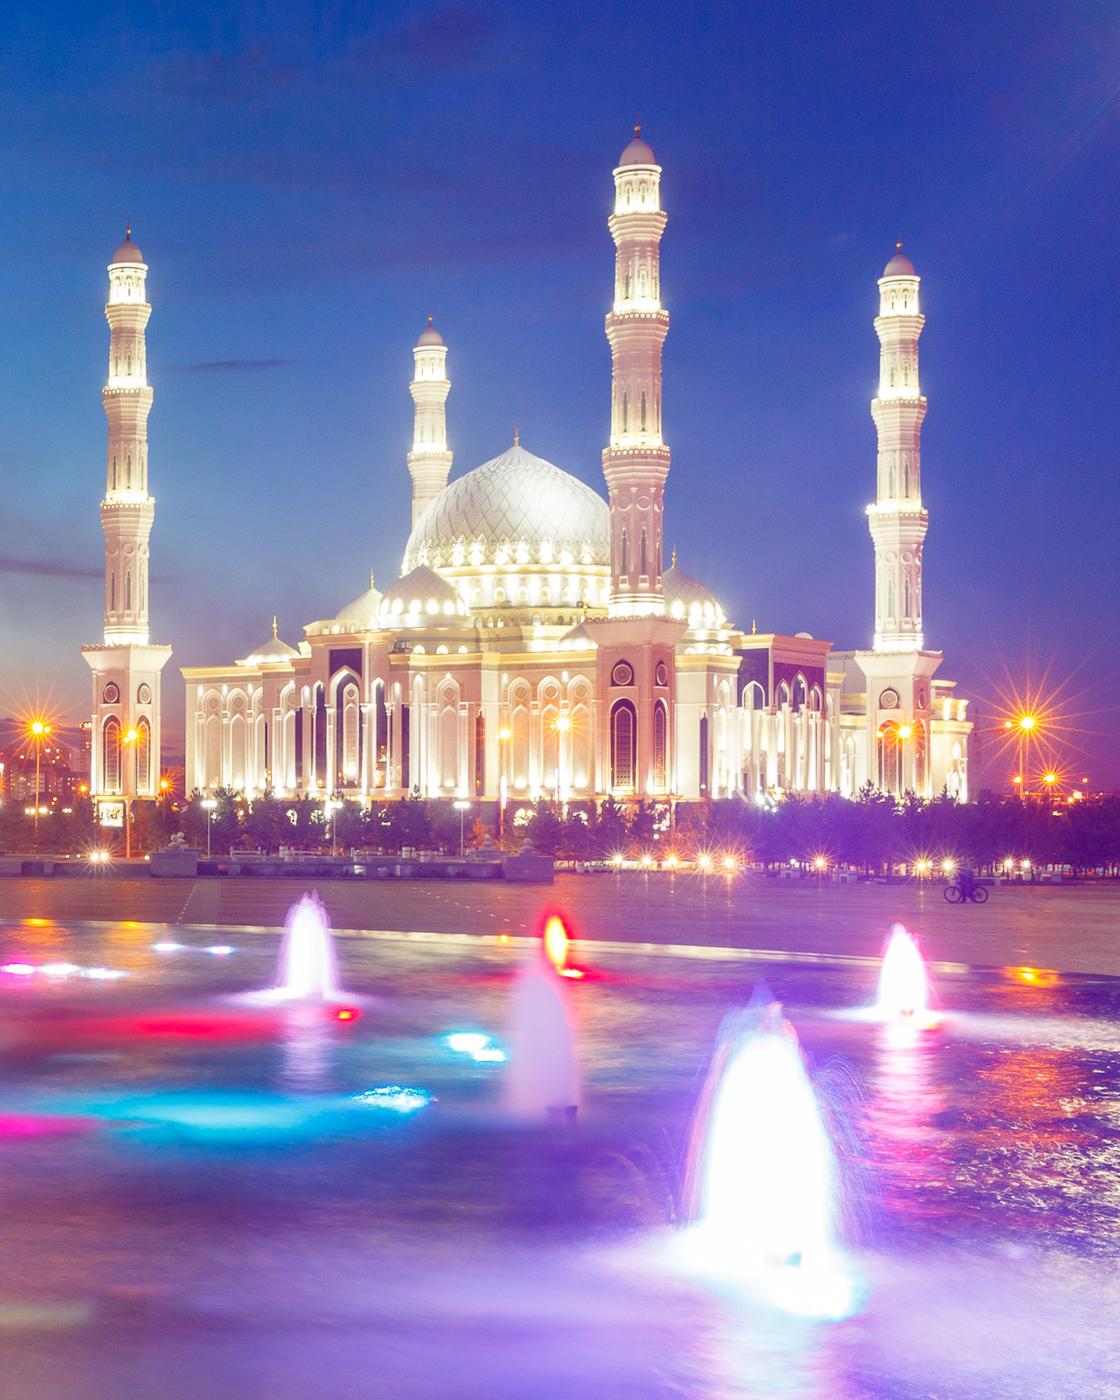 Столица Казахстана Нур-Султан: что мы знаем о главном городе нашей страны?